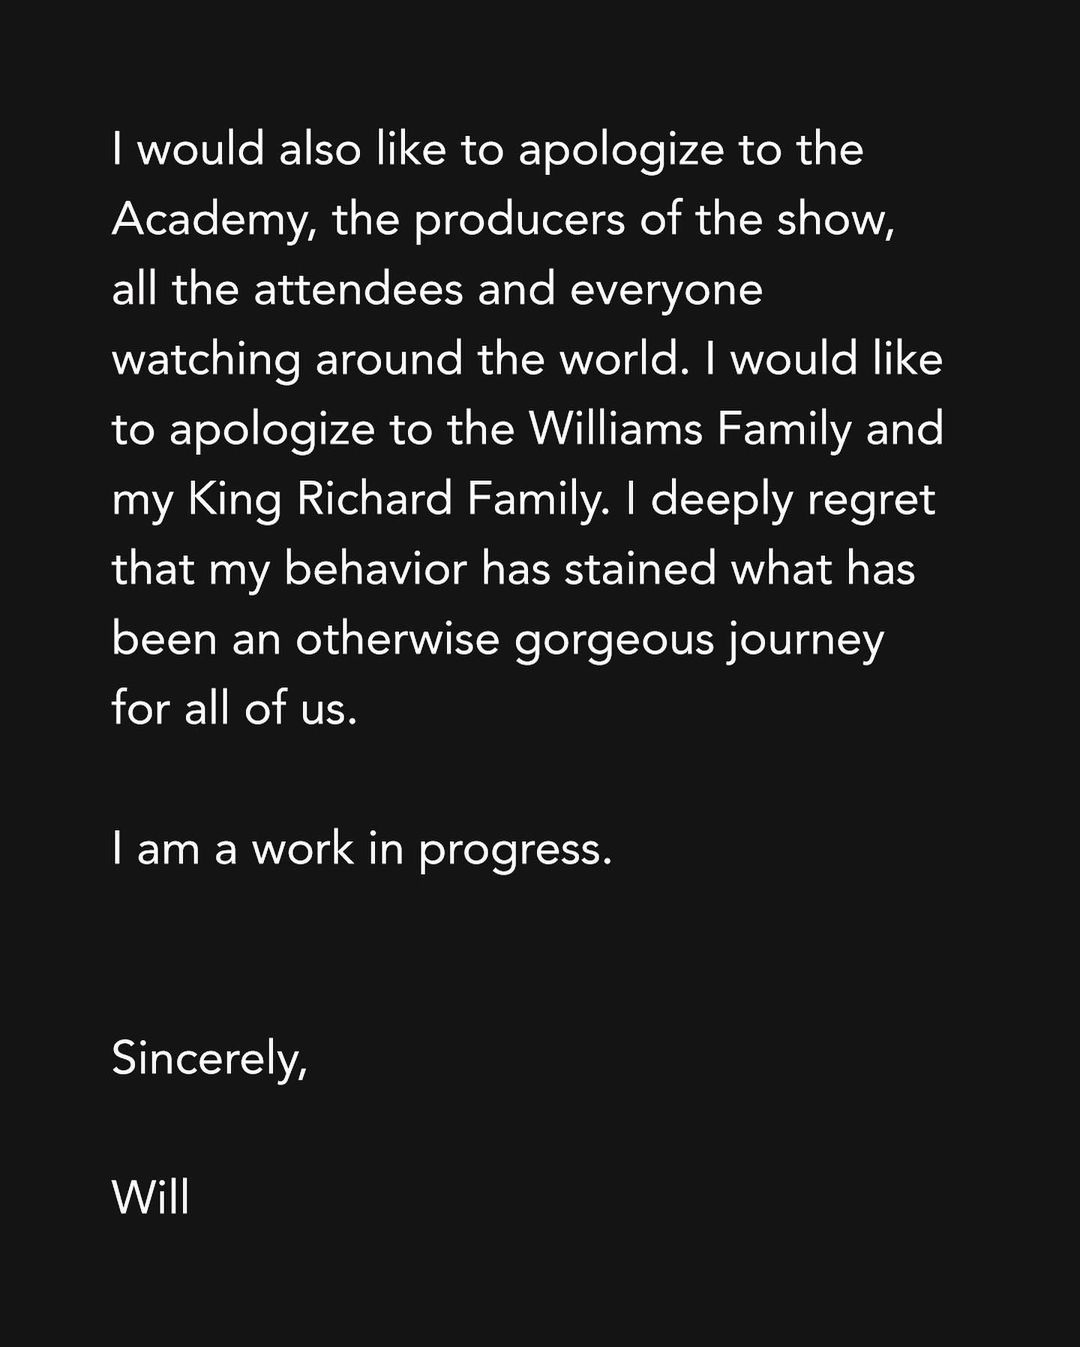 Will Smith xin lỗi Chris Rock vì Hành vi “Không thể chấp nhận và không thể bào chữa được” tại lễ trao giải Oscar - Ảnh 3